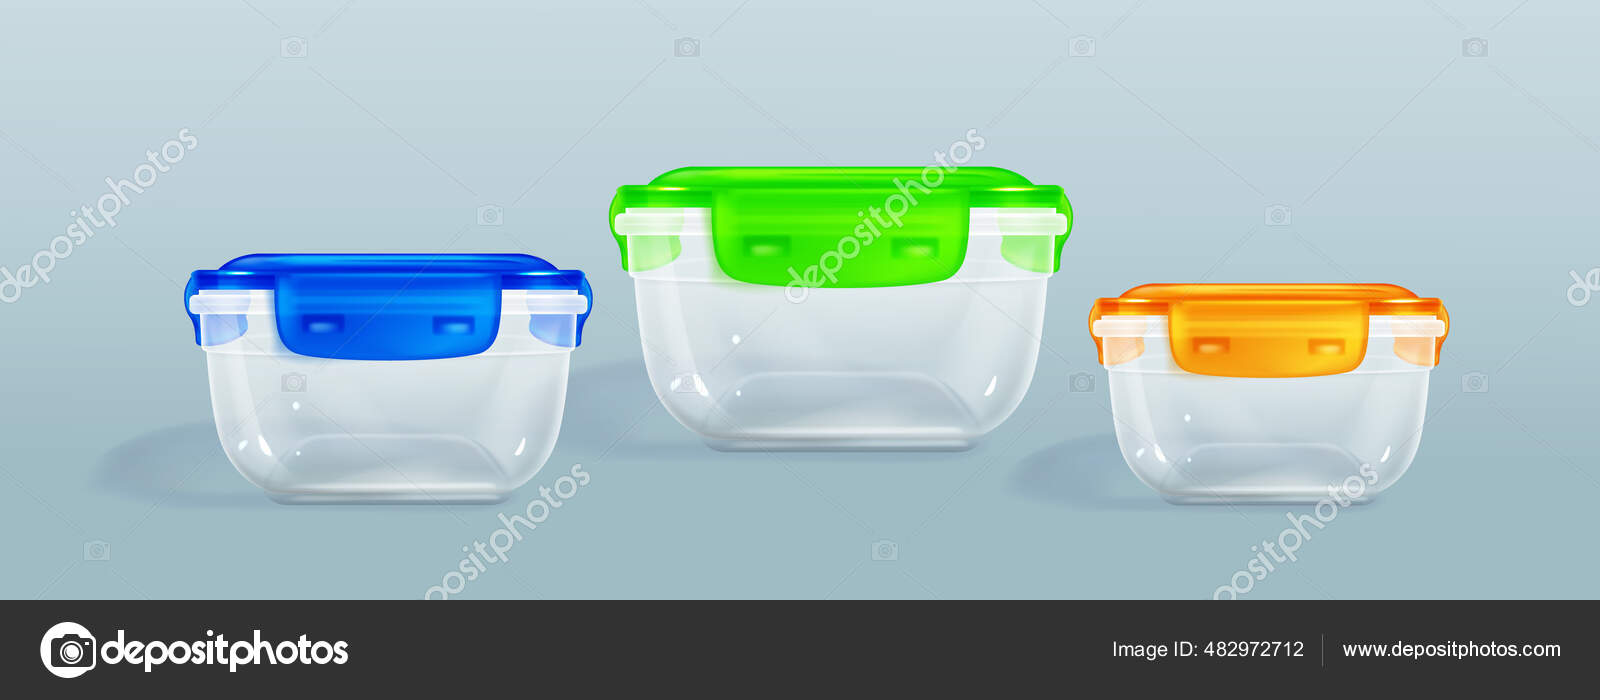 Envases de plástico para almacenamiento de alimentos, tapa